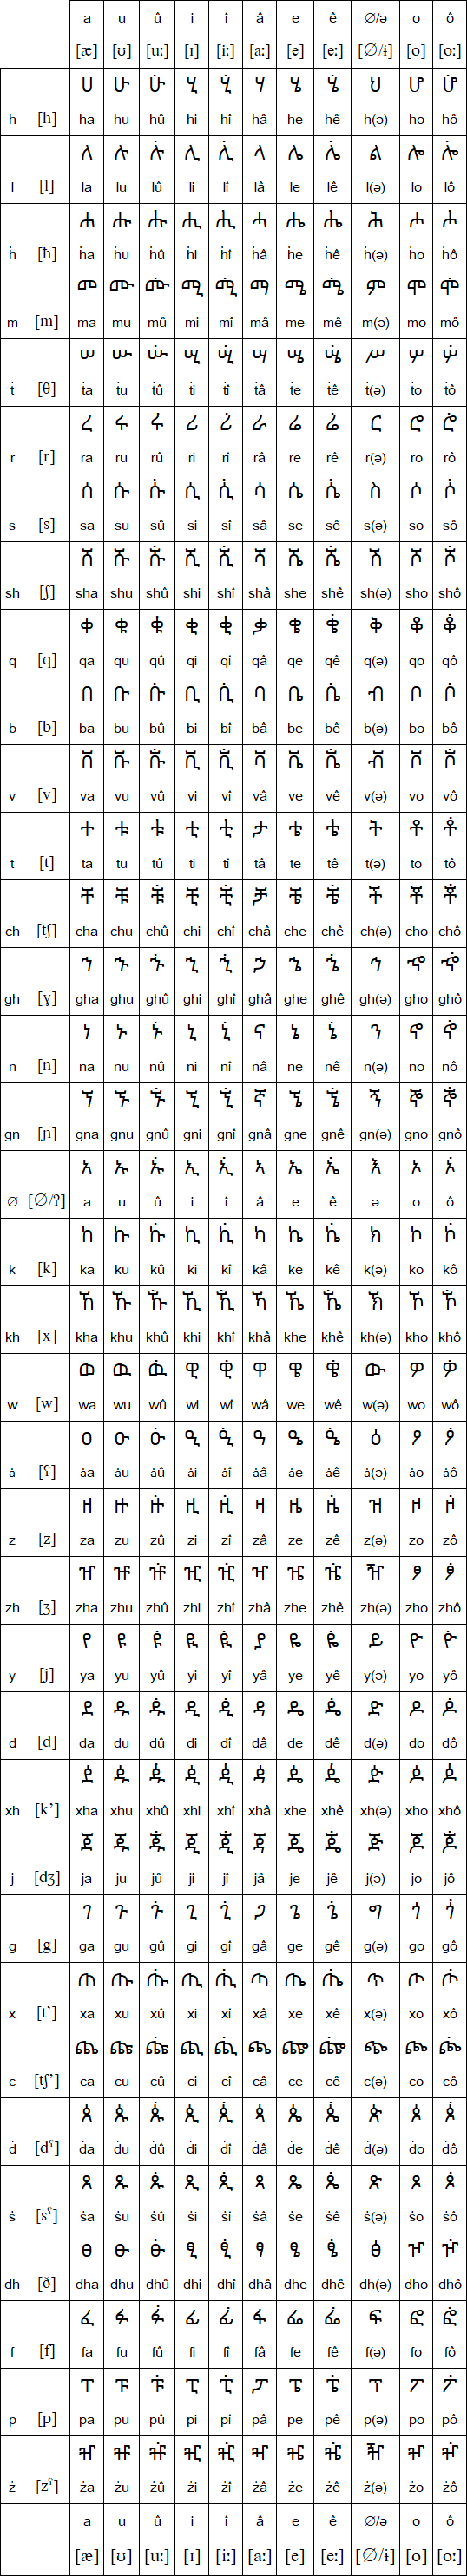 Harari script and pronunciation